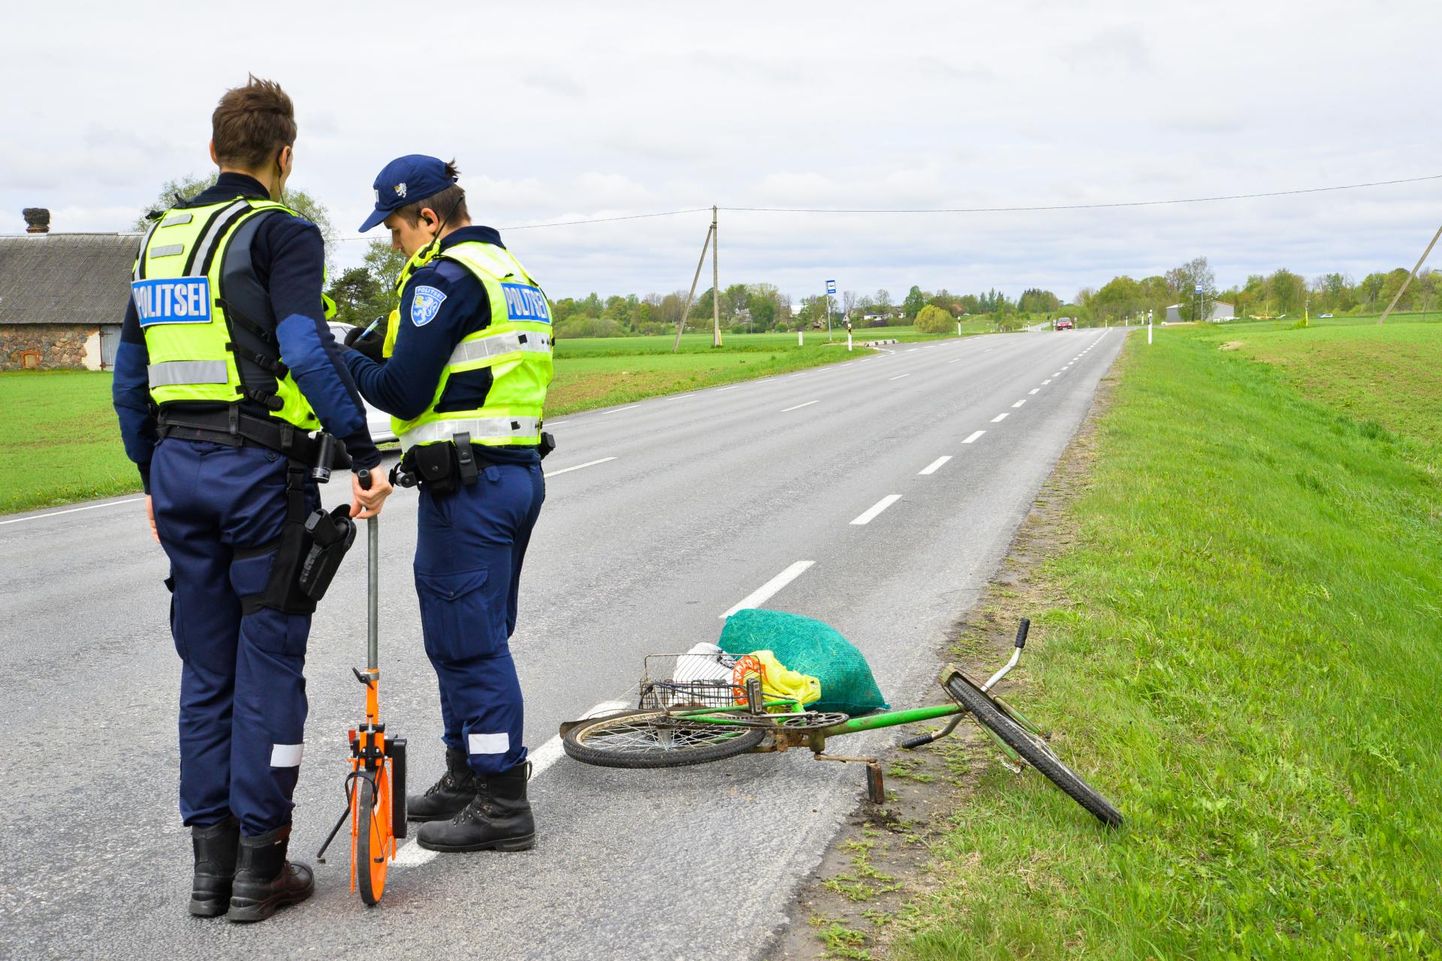 Selles õnnetuses kaldus jalgrattur teeservast sõiduteele ja põrkas vastu mööda sõitnud sõidukit. Kaotajaks jäi rattur.